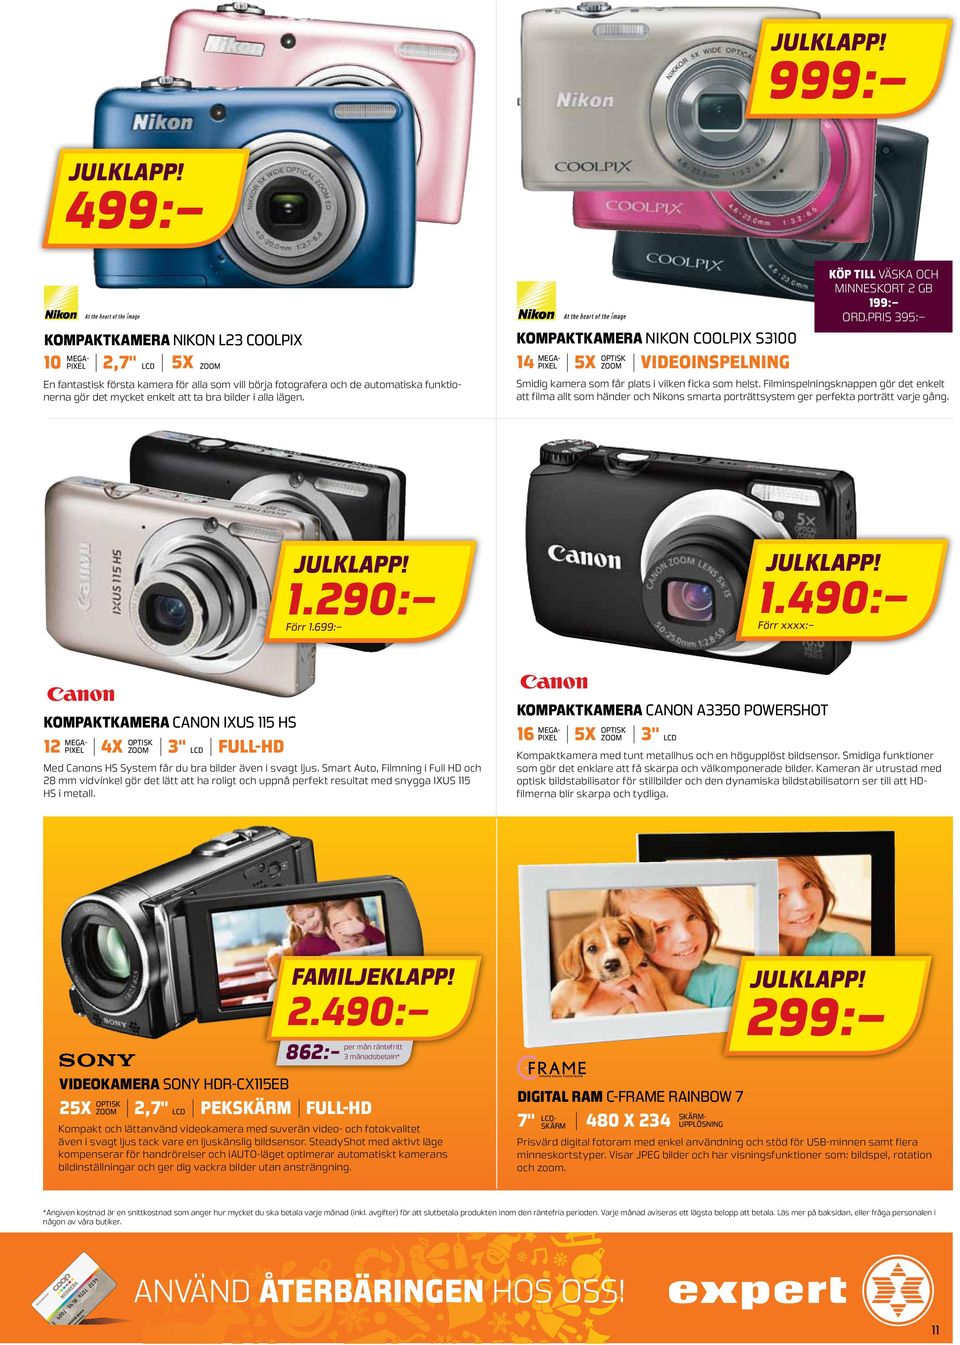 lägen. kompaktkamera Nikon Coolpix S3100 5X zoom optisk 14 videoinspelning köp till väska och minneskort 2 GB 199: ord.pris 395: Smidig kamera som får plats i vilken ficka som helst.